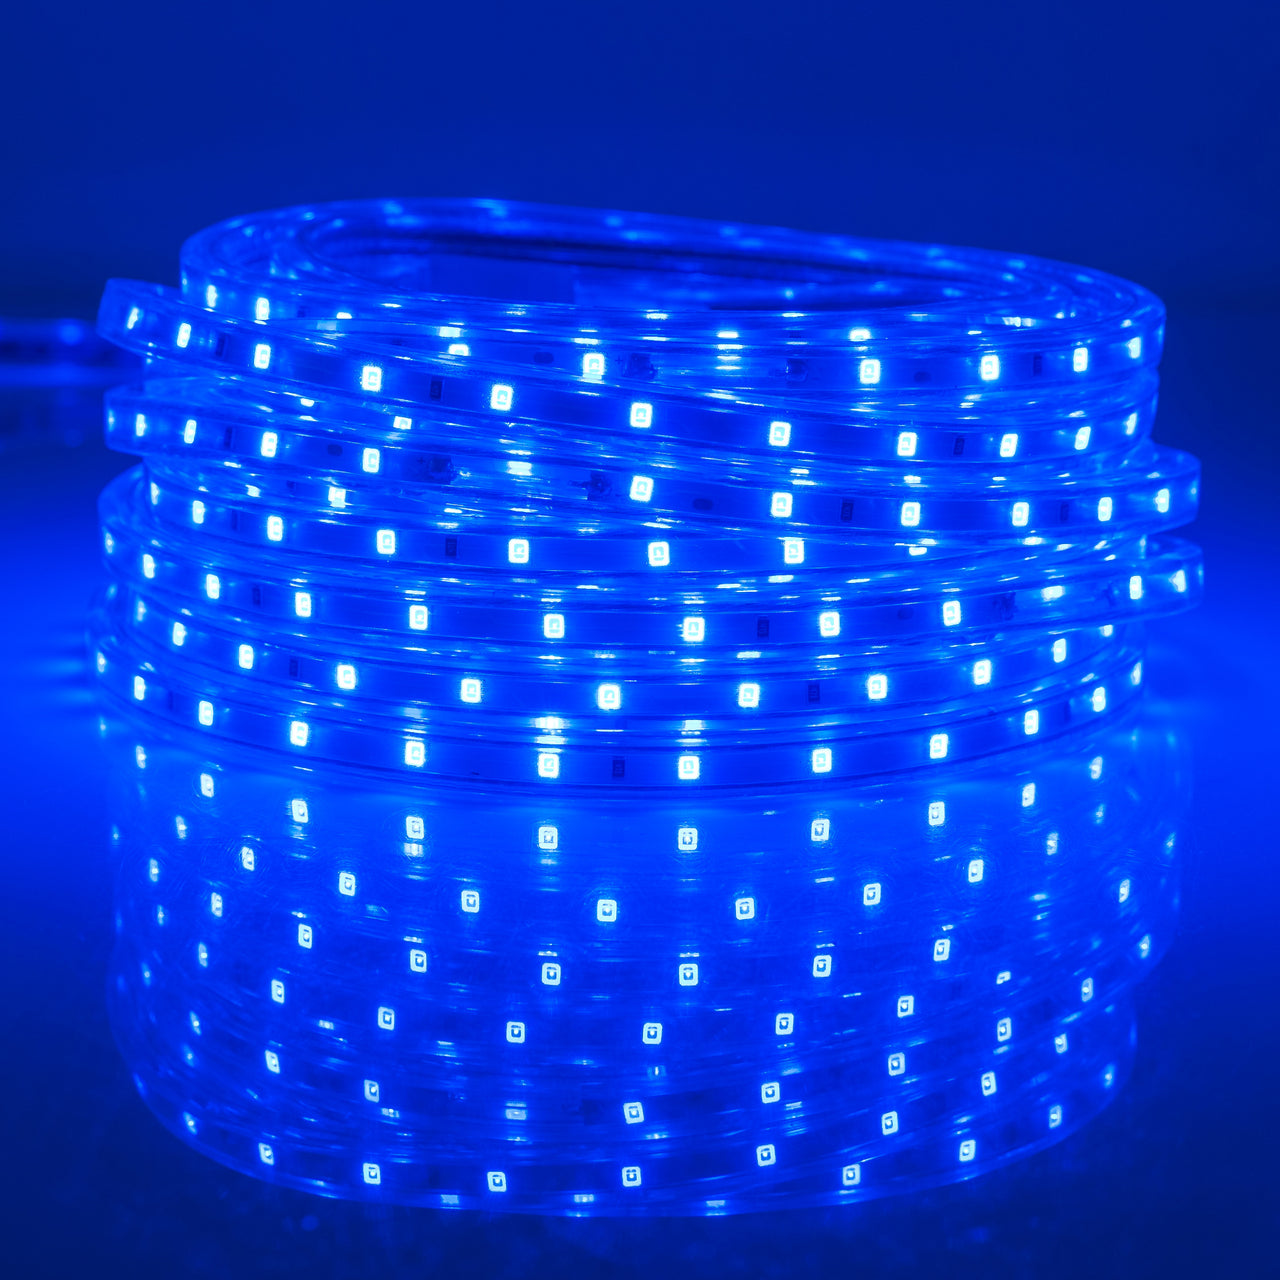 Blue SMD 2835 LED Flexible Indoor/Outdoor Light Strip - West Ivory LED Lighting 